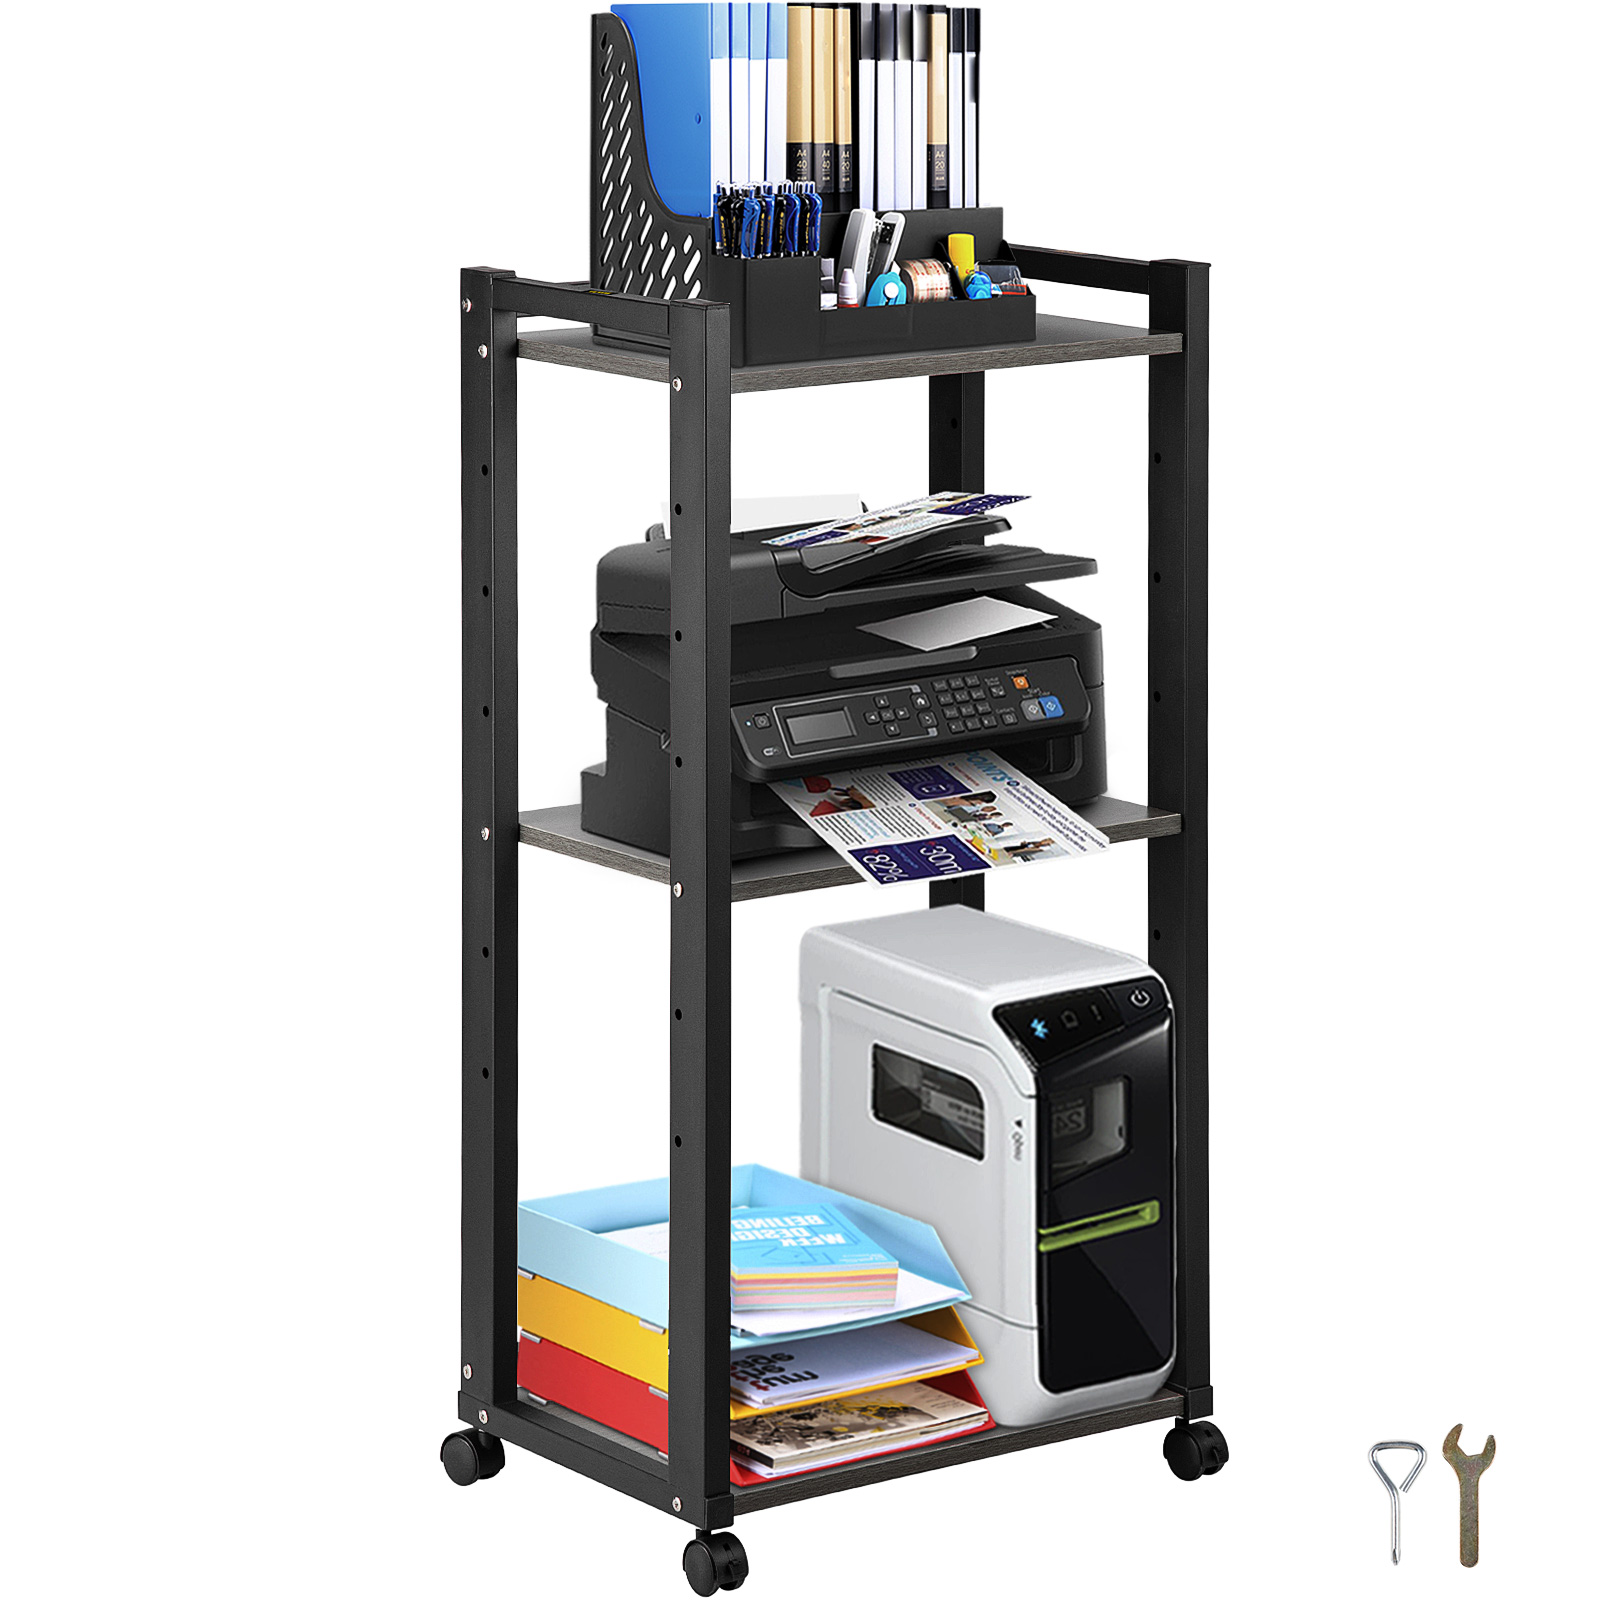 Soporte para impresora soporte para impresora escritorio de